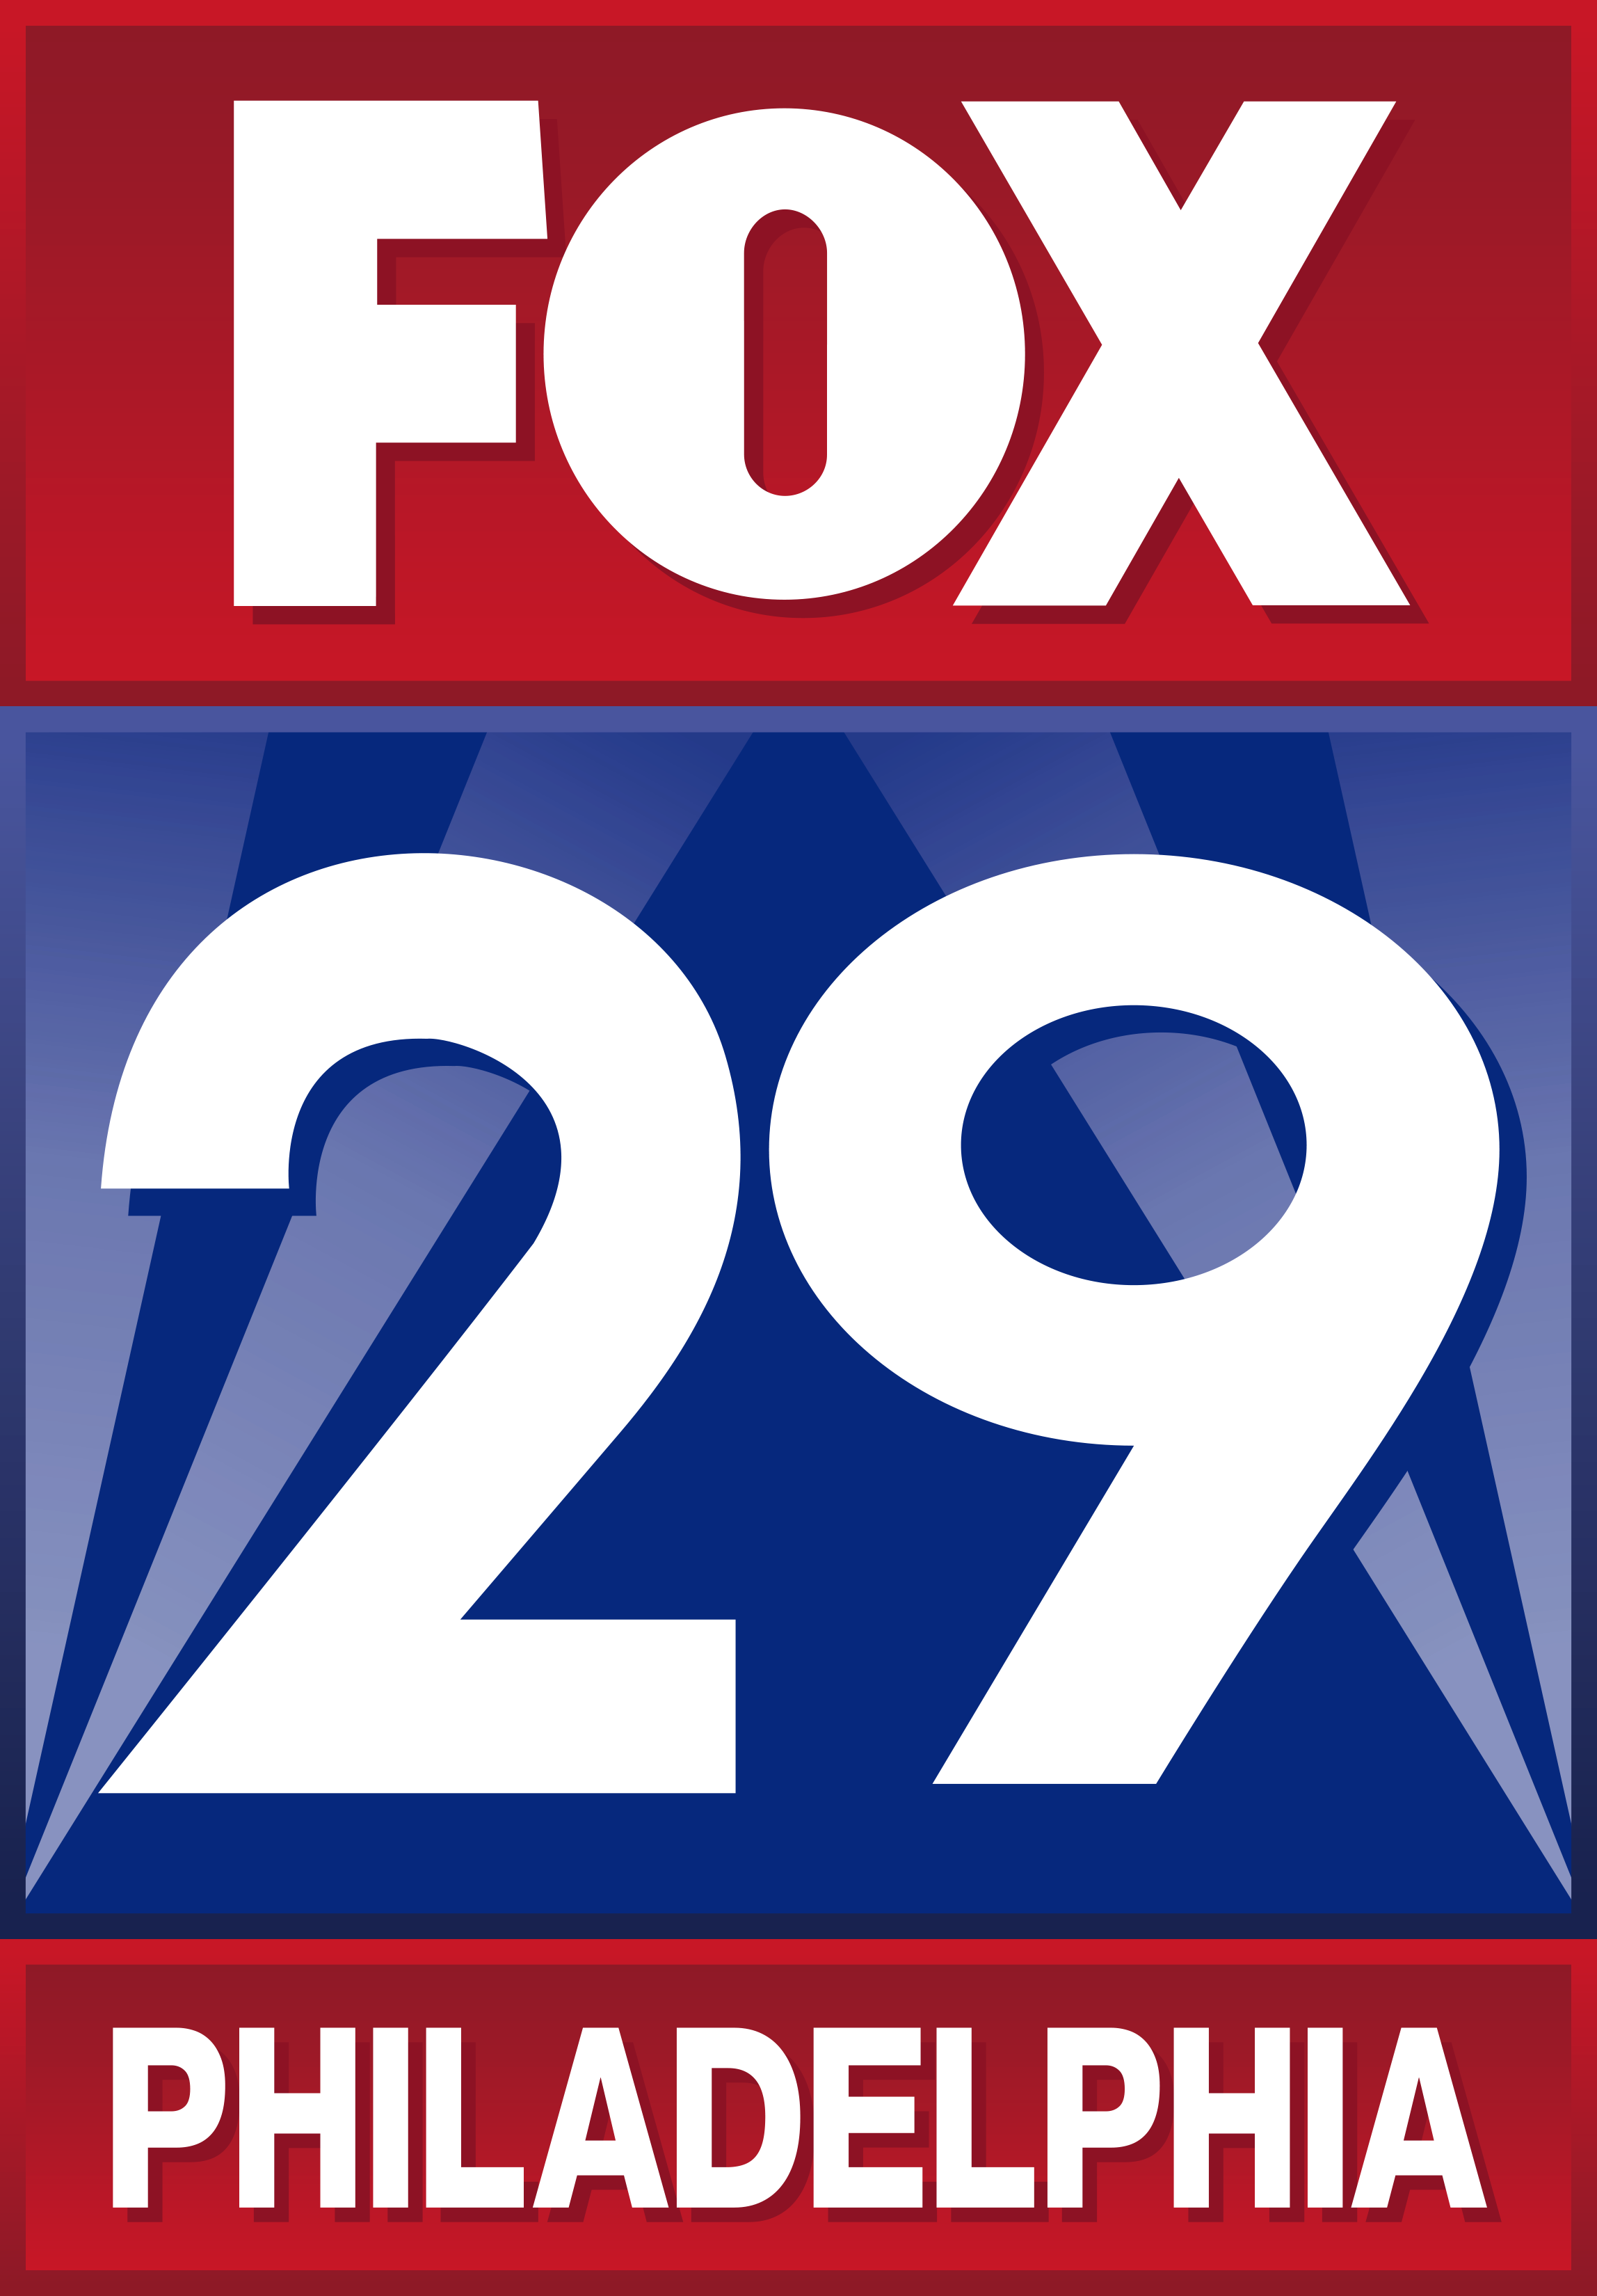 E. Fox29 (Medios de comunicación)